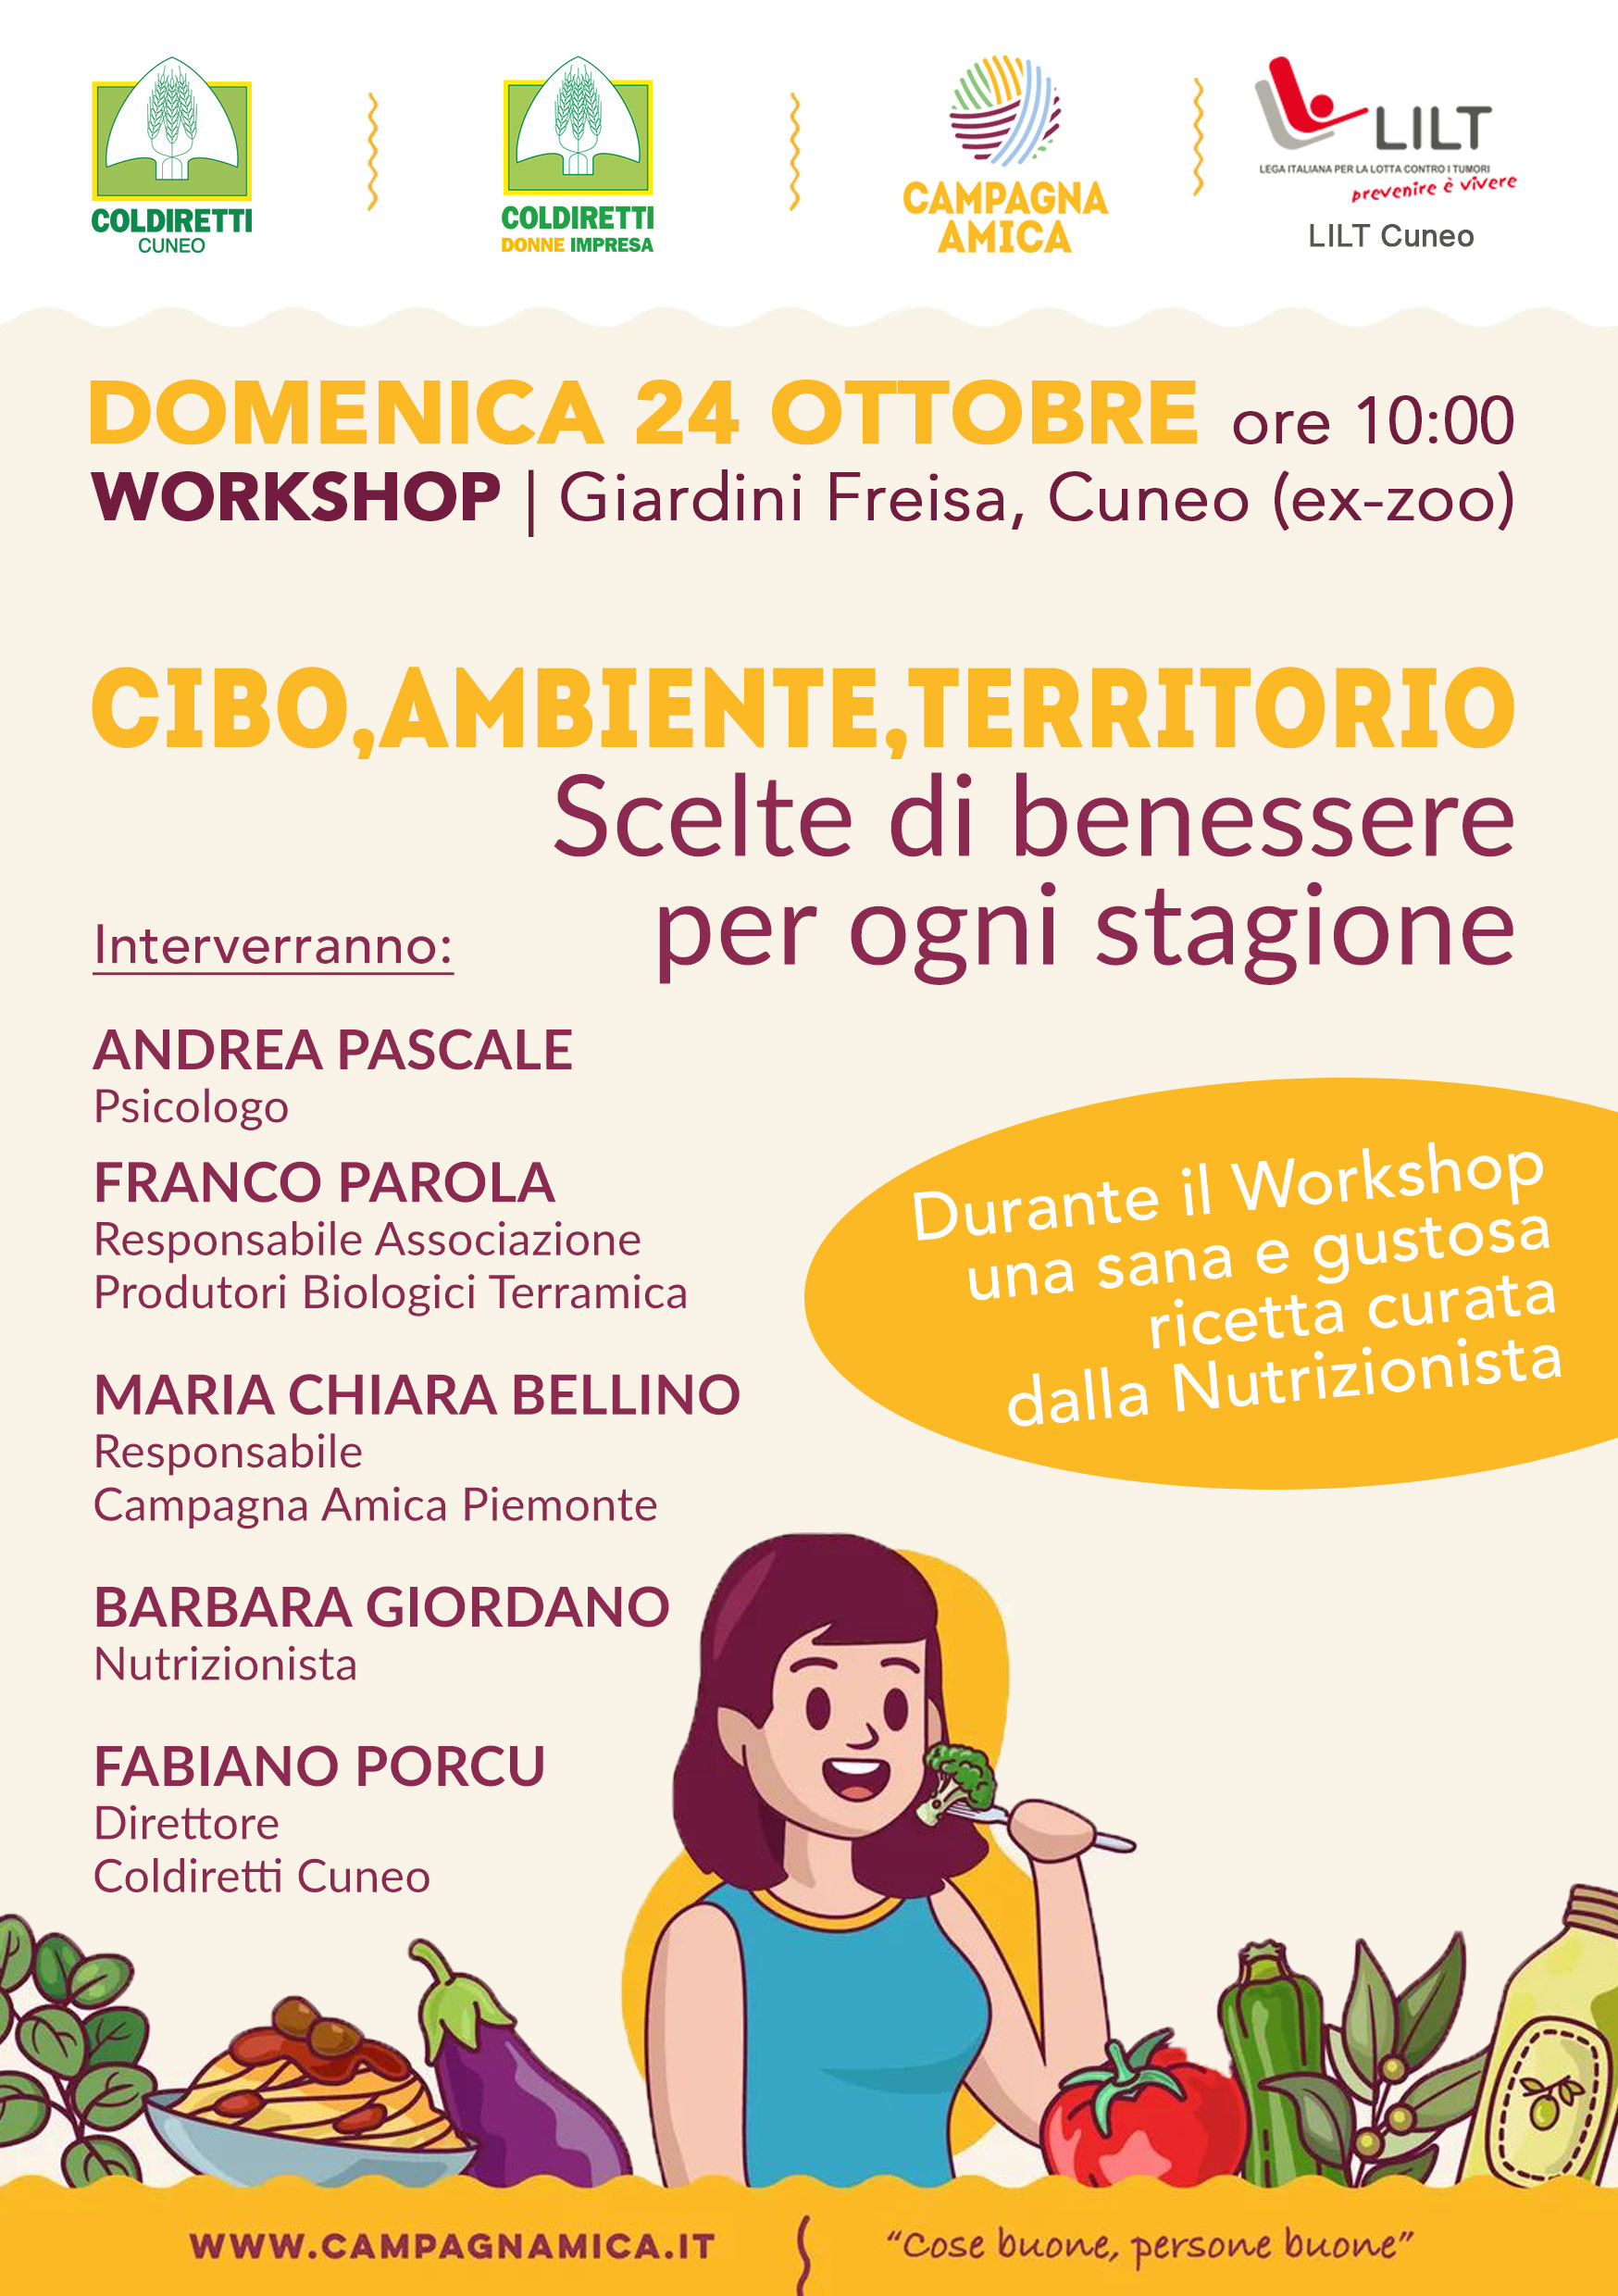 Domenica 24 ottobre Cuneo Cibo, Ambiente, Territorio